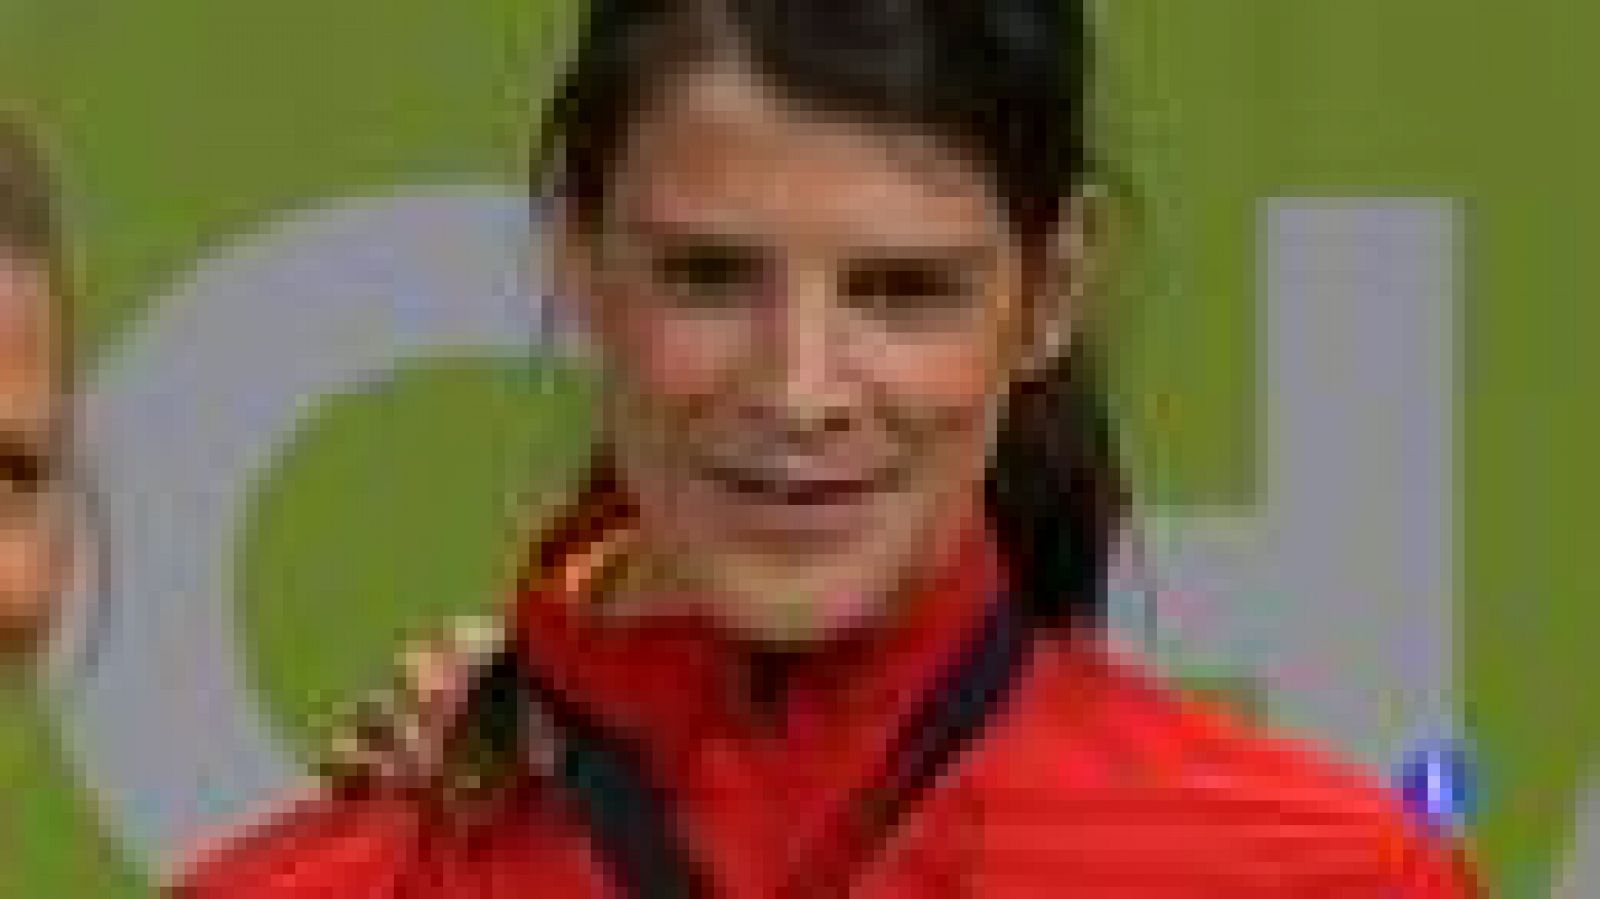 La atleta cántabra Ruth Beitia fue la protagonista este domingo  del Europeo en pista cubierta que se celebra en Goteborg (Suecia)  tras lograr la medalla de oro con su mejor marca personal en la final  de salto de altura (1.99), la cuarta de la dele